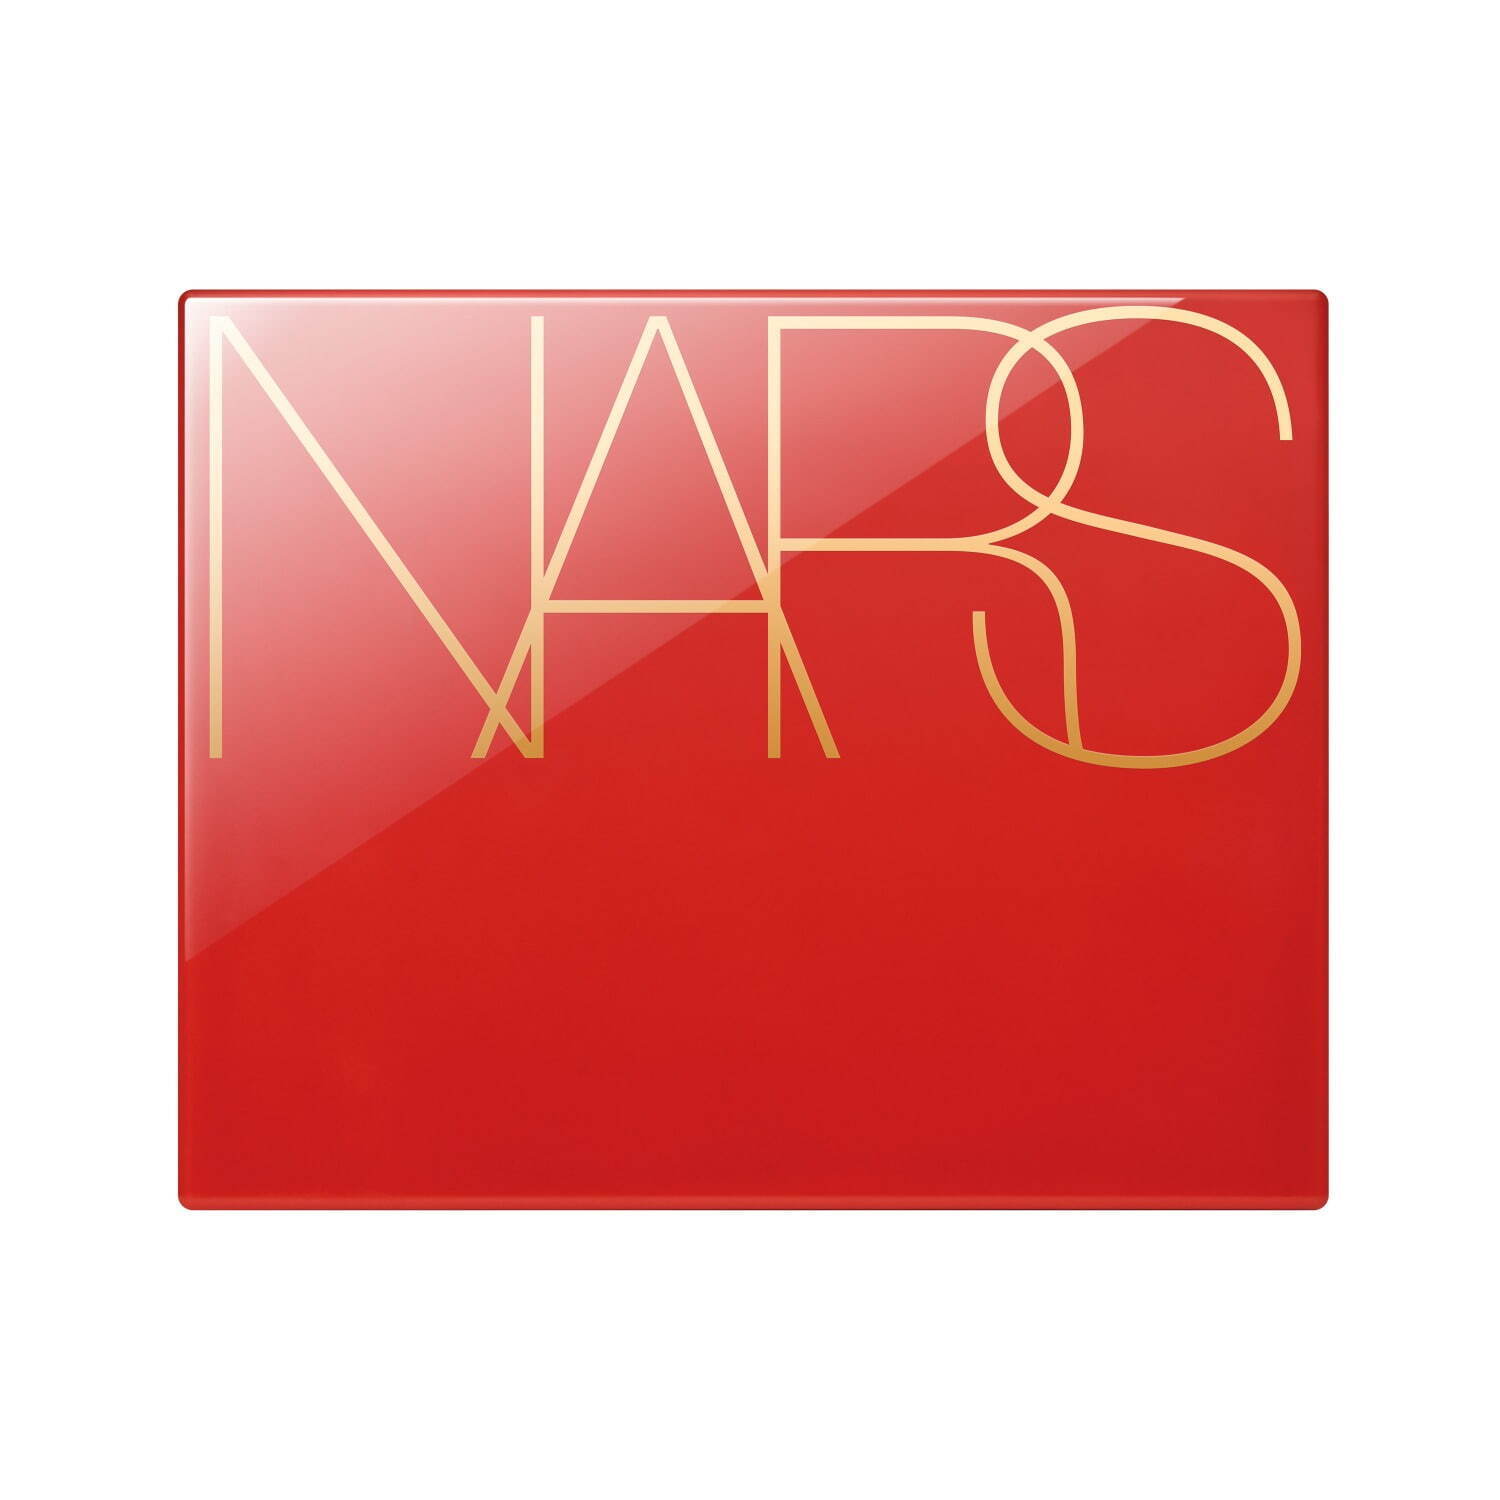 NARS“真っ赤な”パッケージの22年限定コスメ、カルト的人気フェイス 